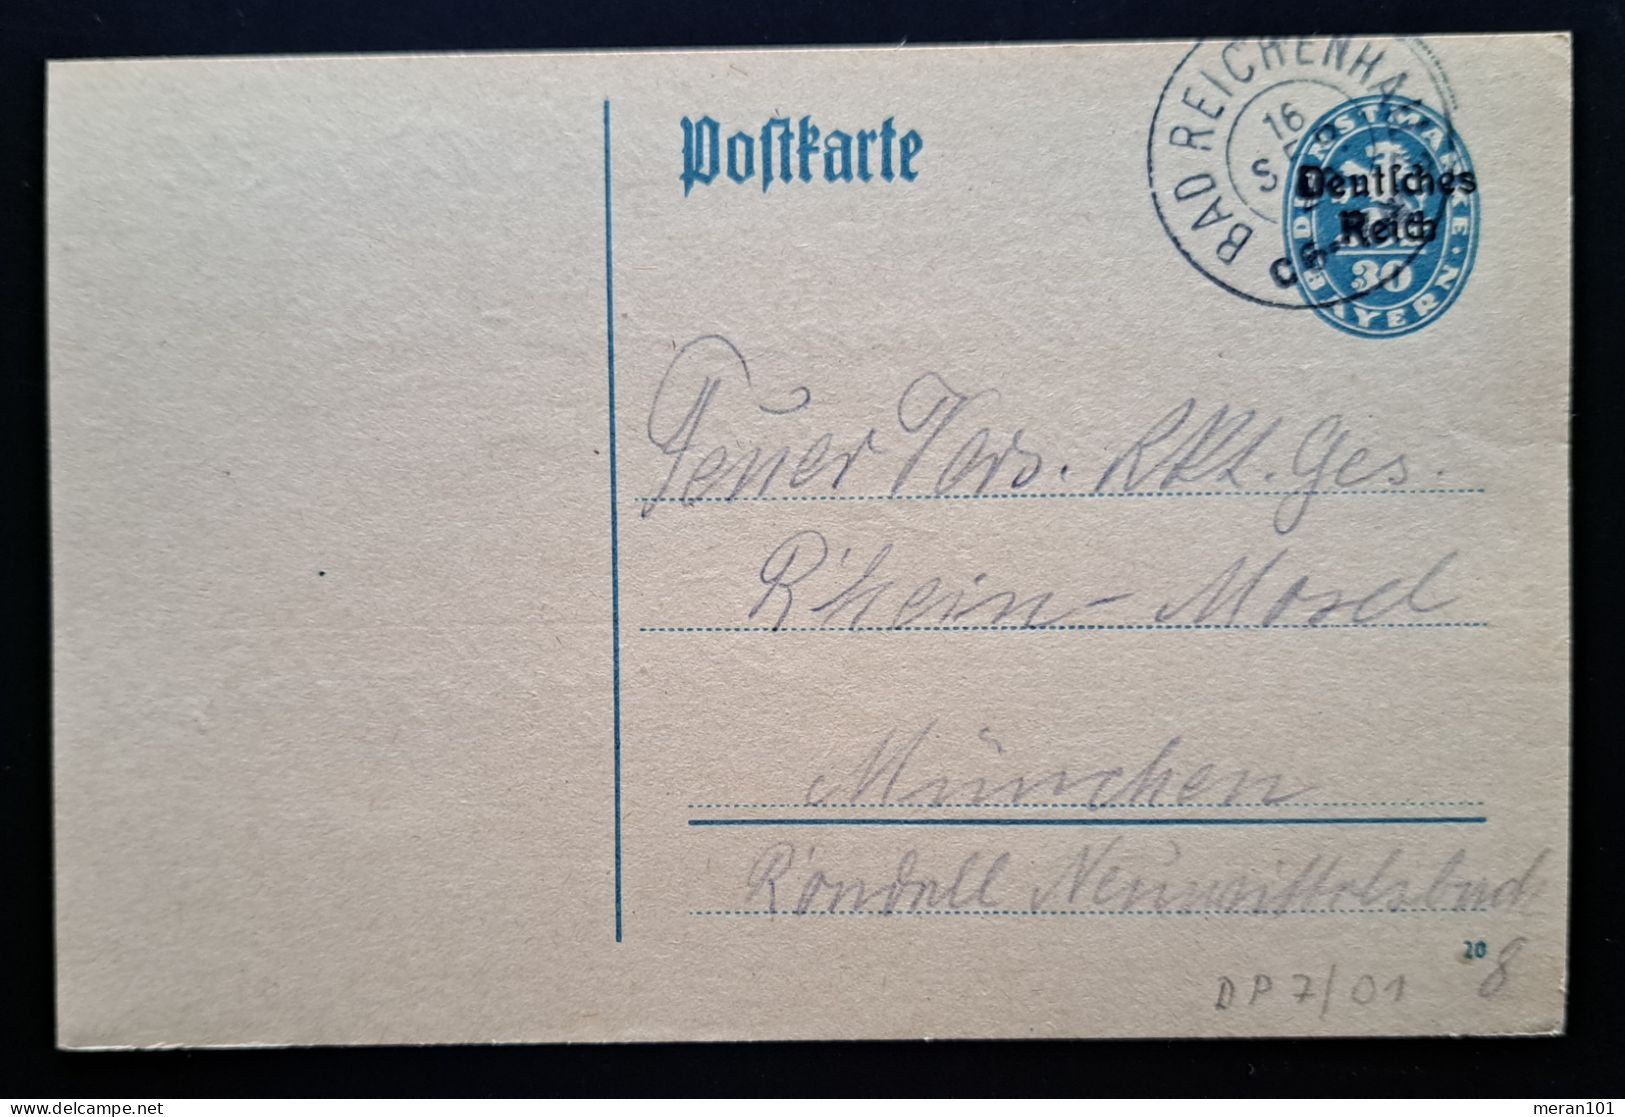 Deutsches Reich DIENST 1920, Dienstpostkarte DP7/01 BAD REICHENHALL - Dienstzegels